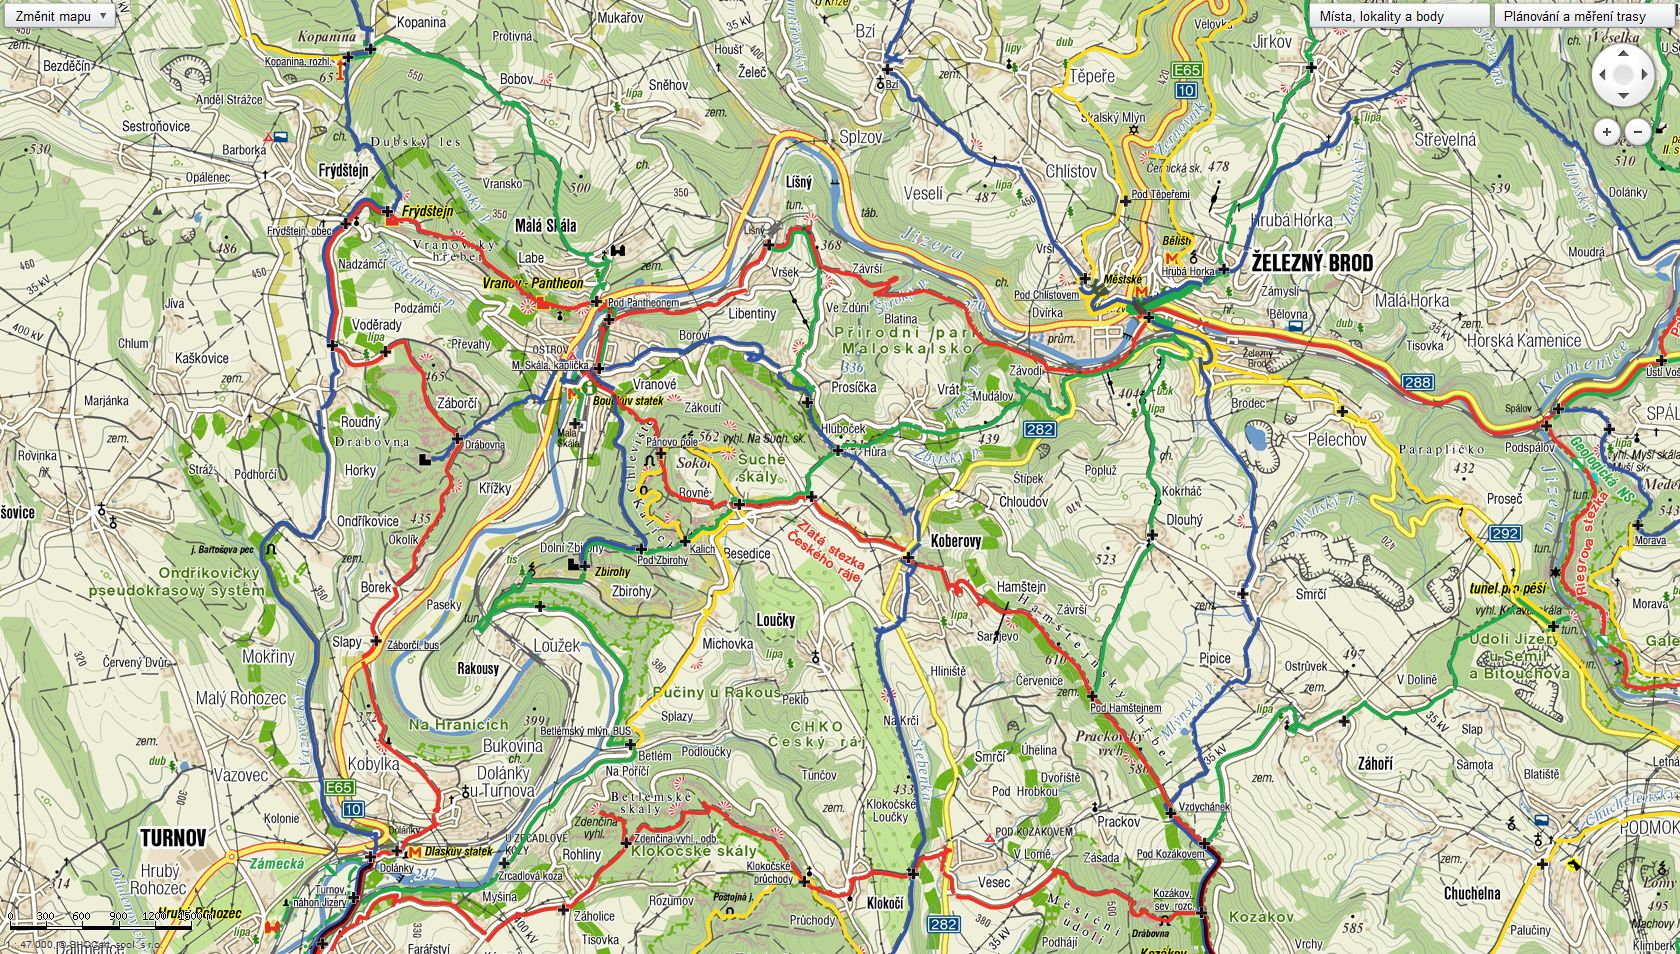 mapa_turnov_zelbrod.jpg